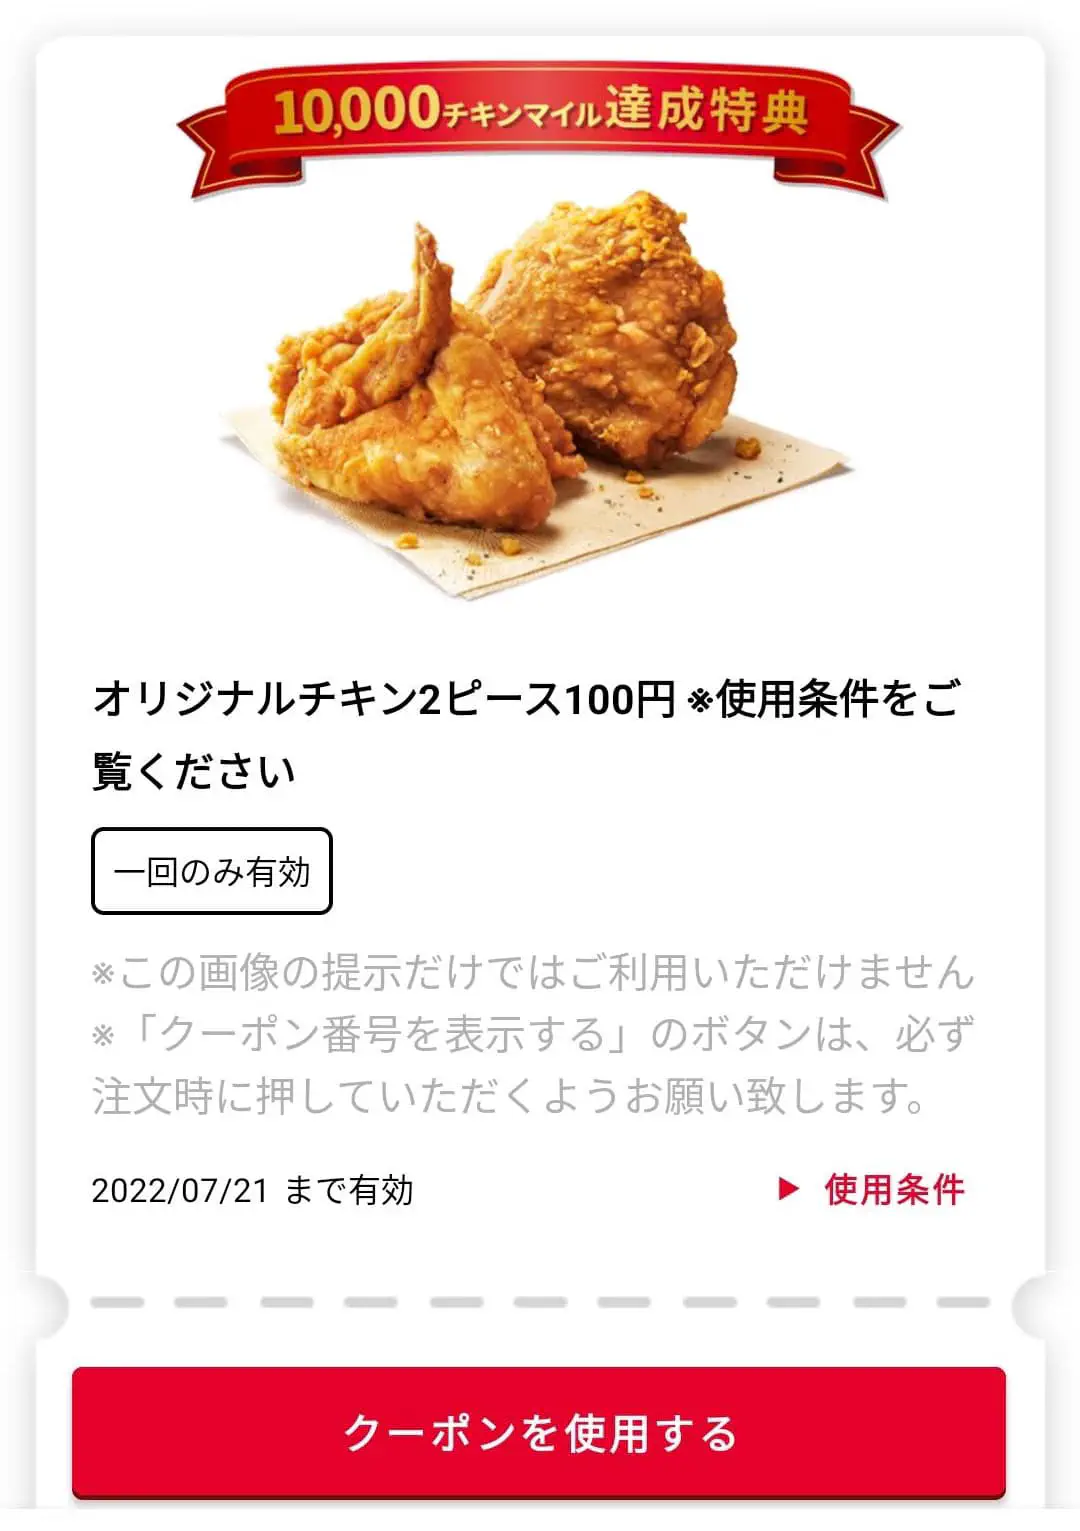 2022/07/15：吮指原味鸡x2 = 100 日元